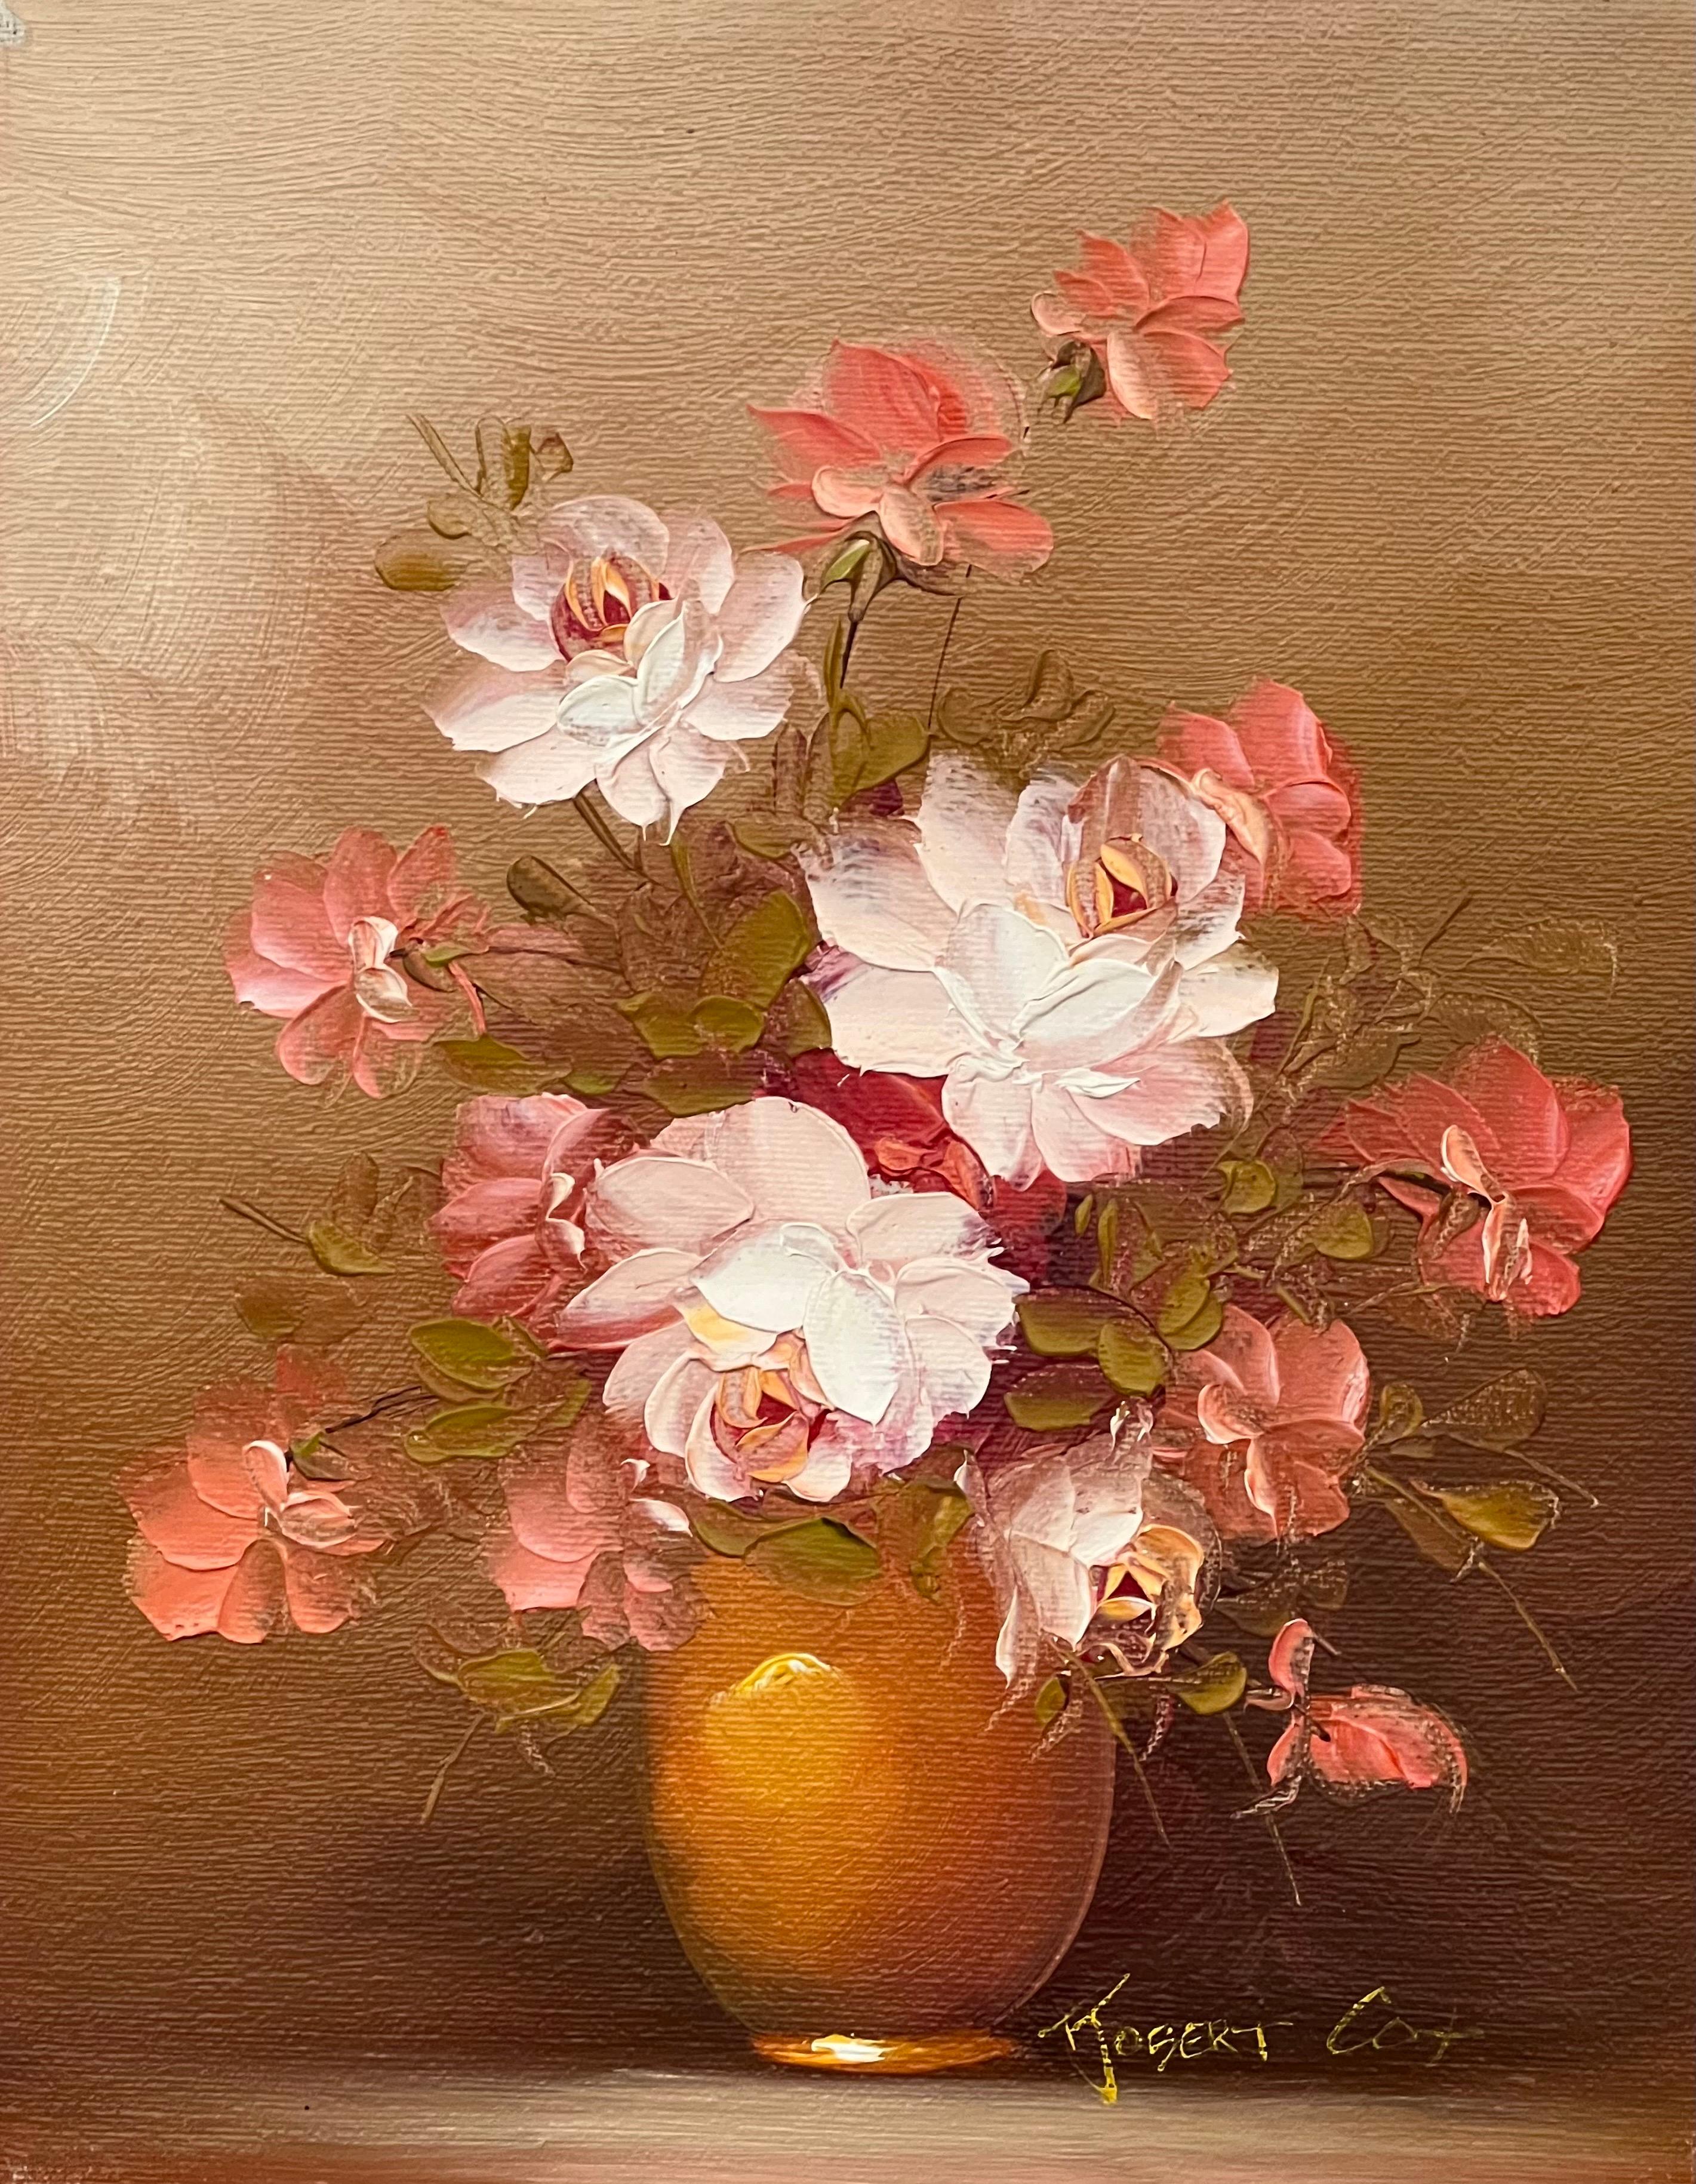 Nature morte d'un vase de roses rouges et blanches par un artiste américain du 20e siècle